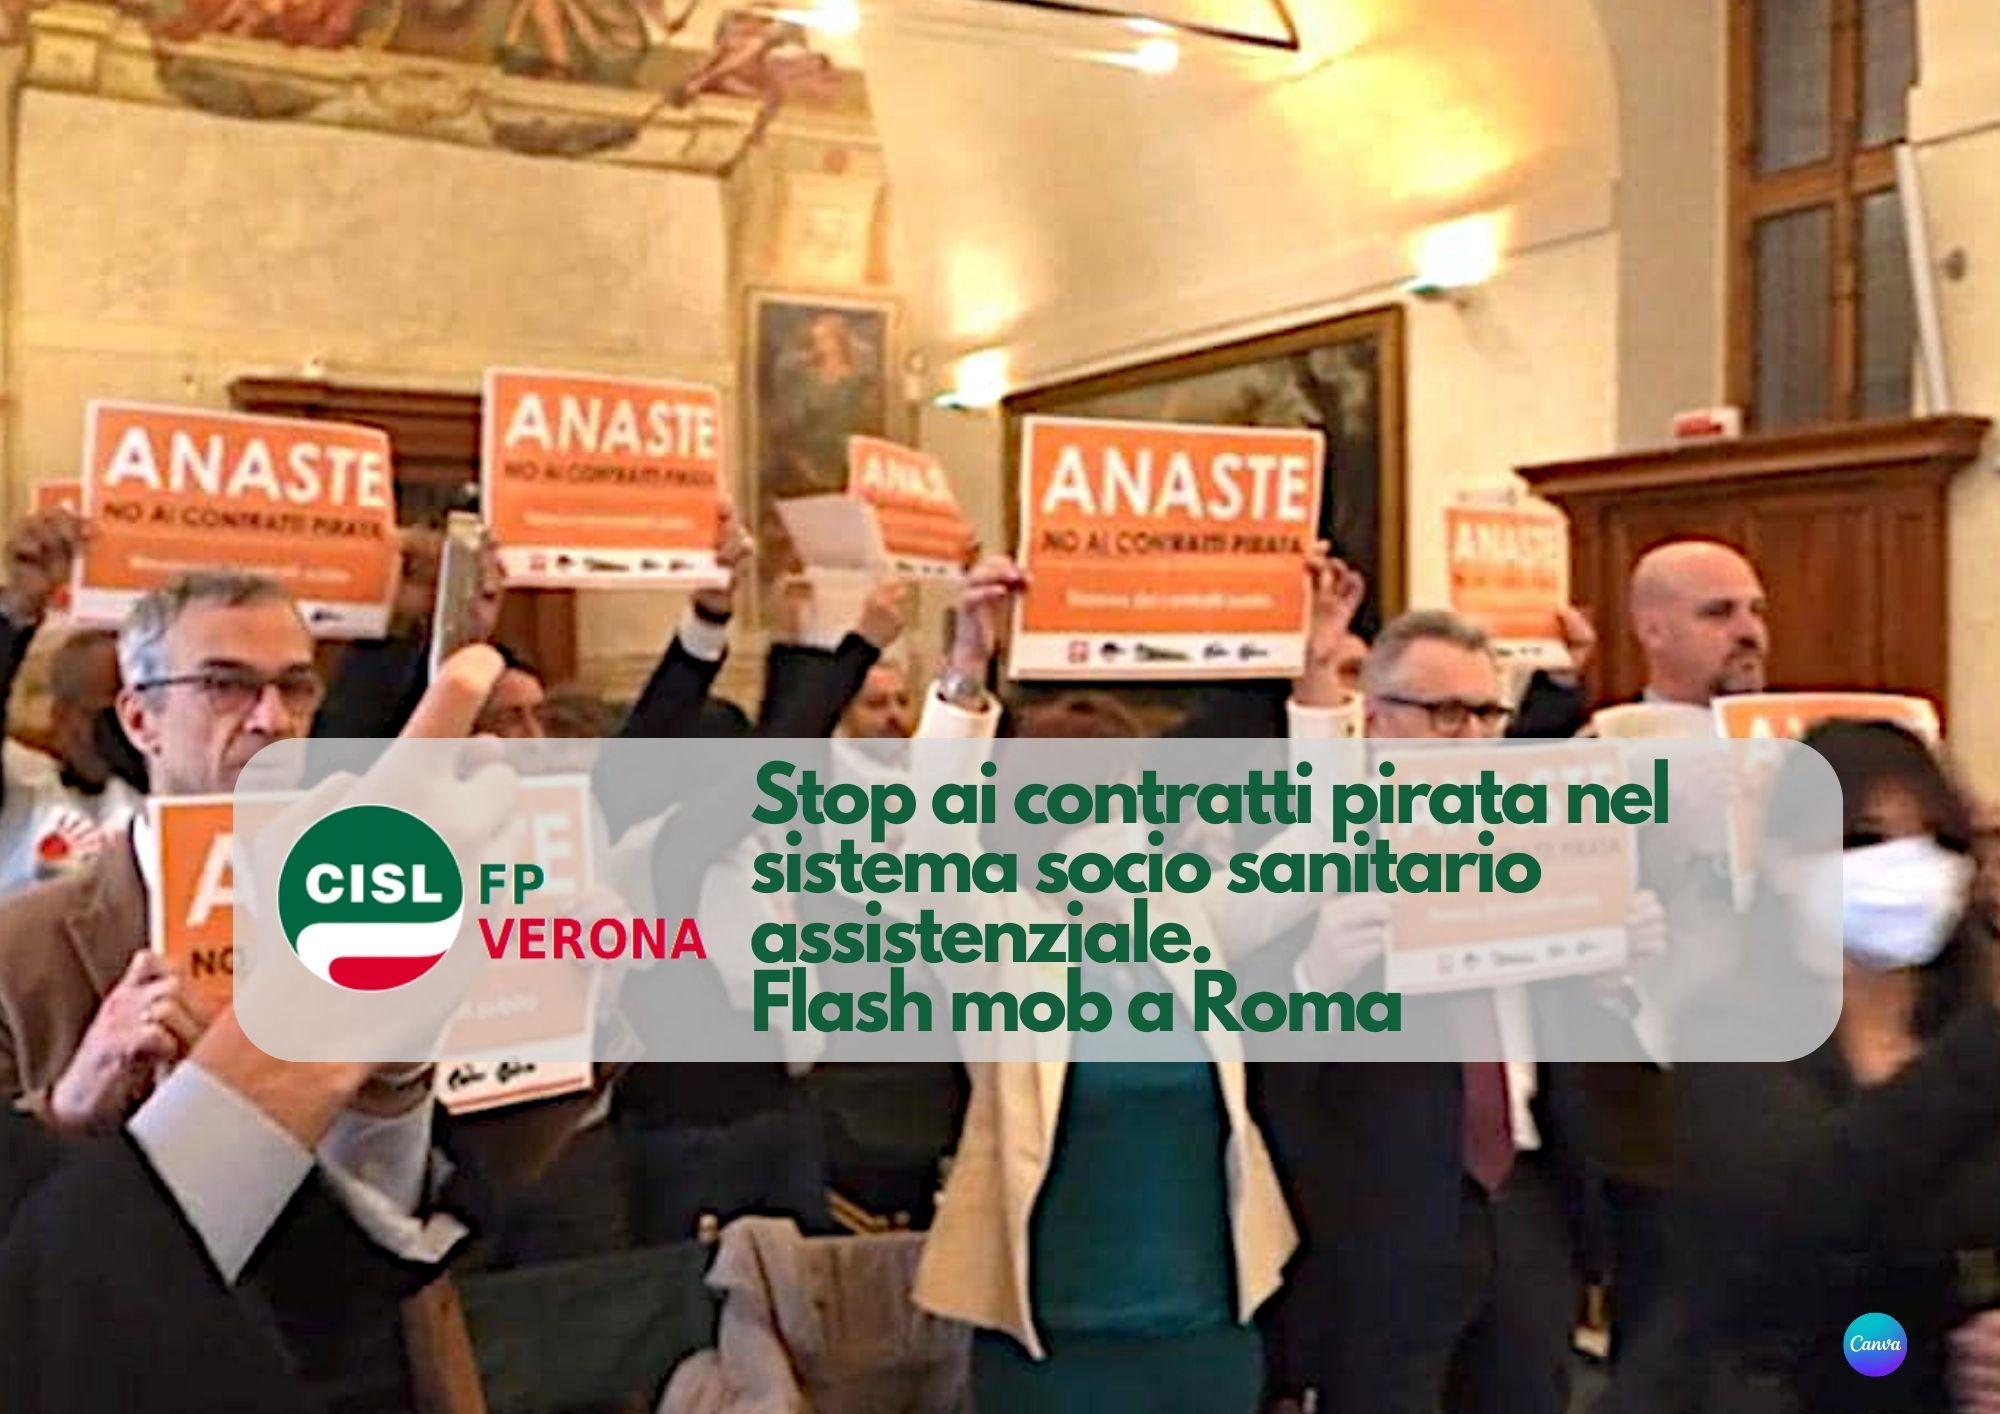 CISL FP Verona. Stop ai contratti pirata nel sistema socio sanitario assistenziale. Flash mob a Roma